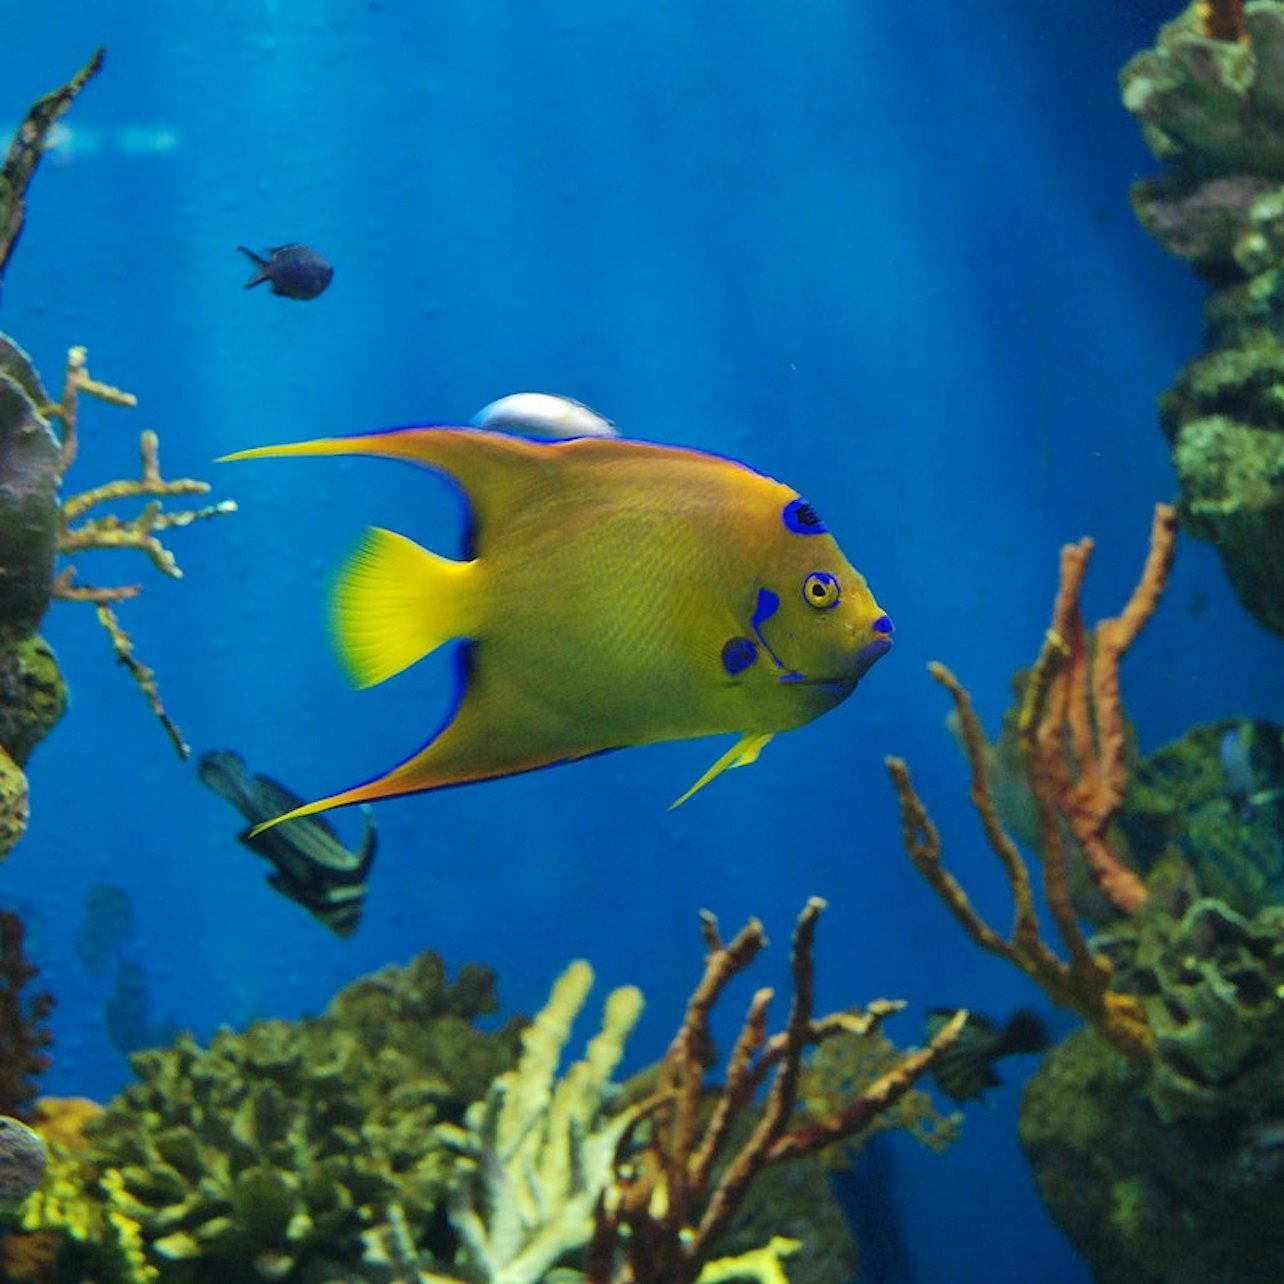 L'Aquarium de Barcelona: Flexi-ticket - Accommodations in Barcelona